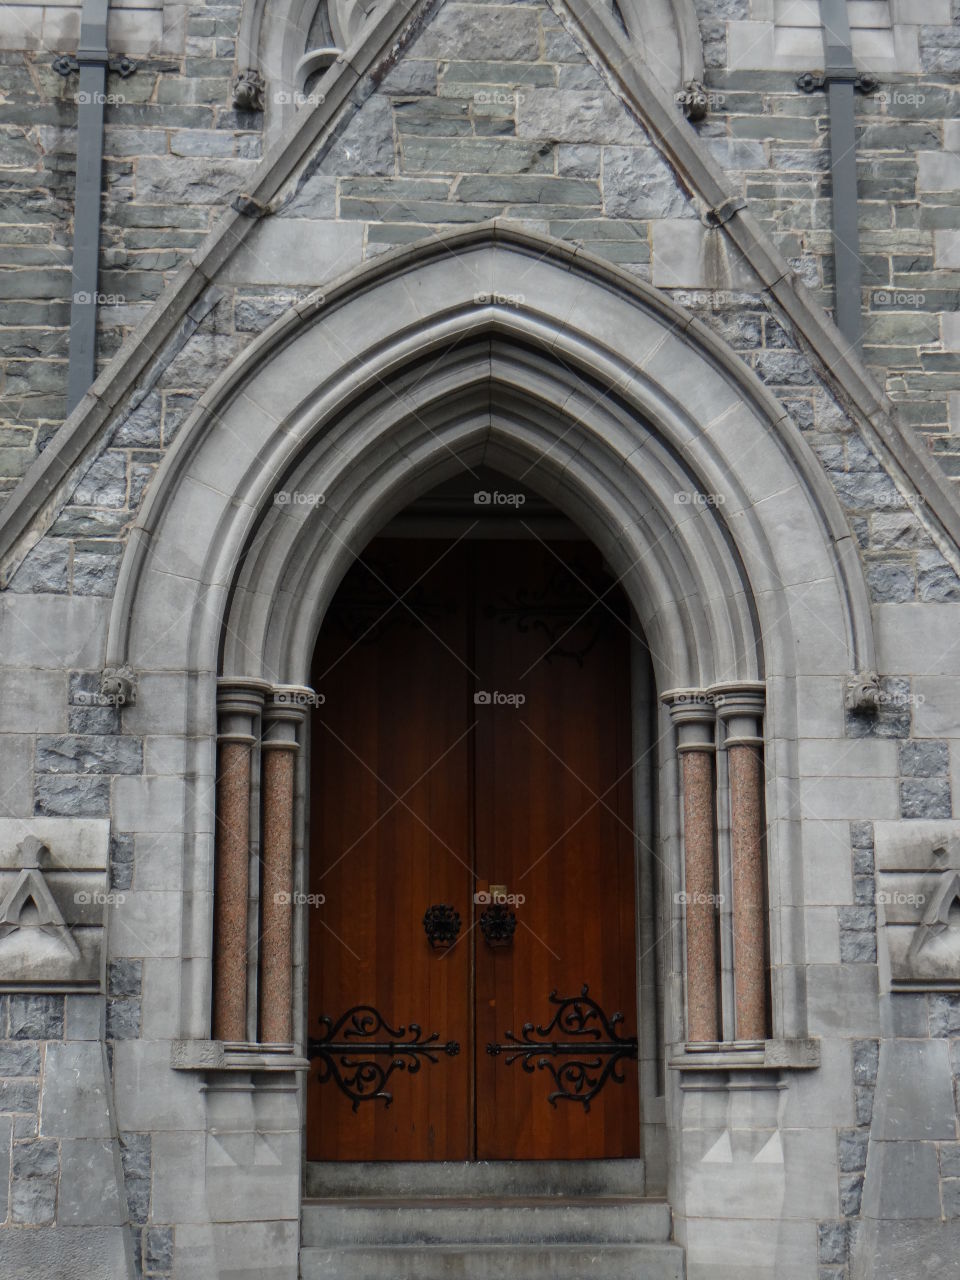 Wooden door in stone archway 